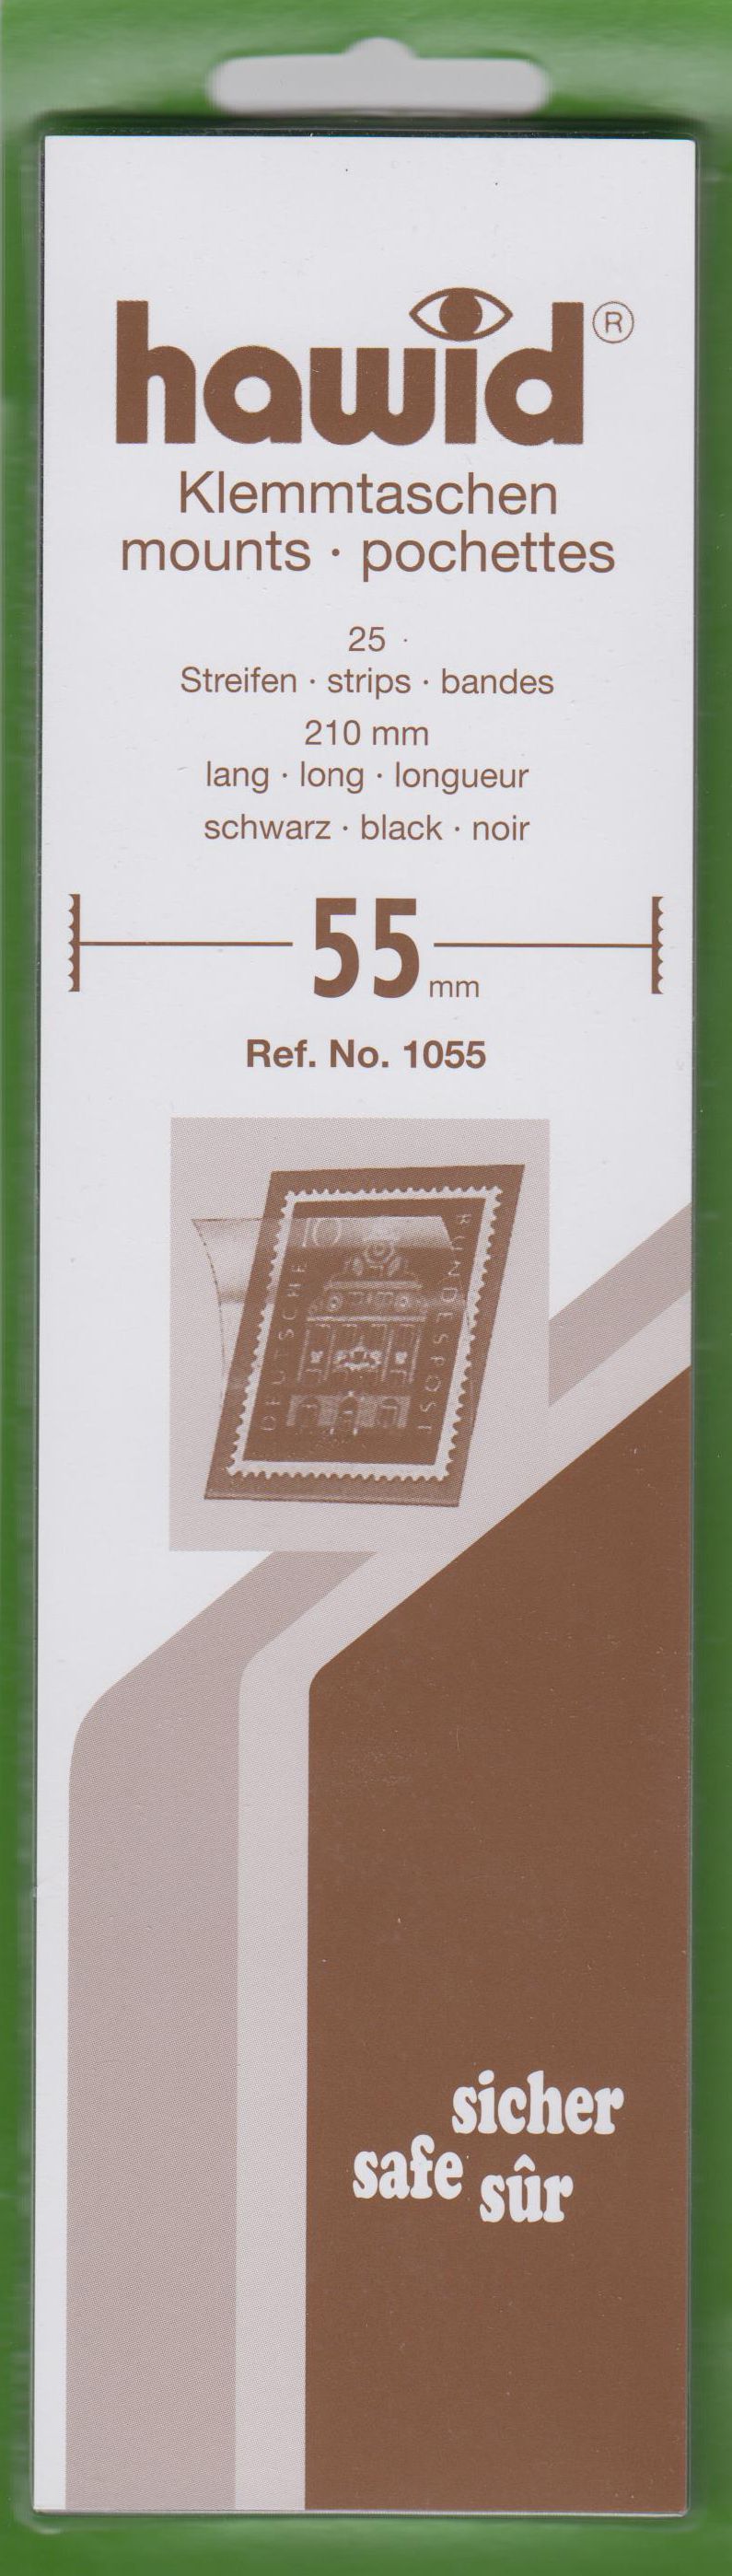 Hawid Klemmtaschen Nr. 1055, 25 Streifen 210mm x 55mm, schwarz